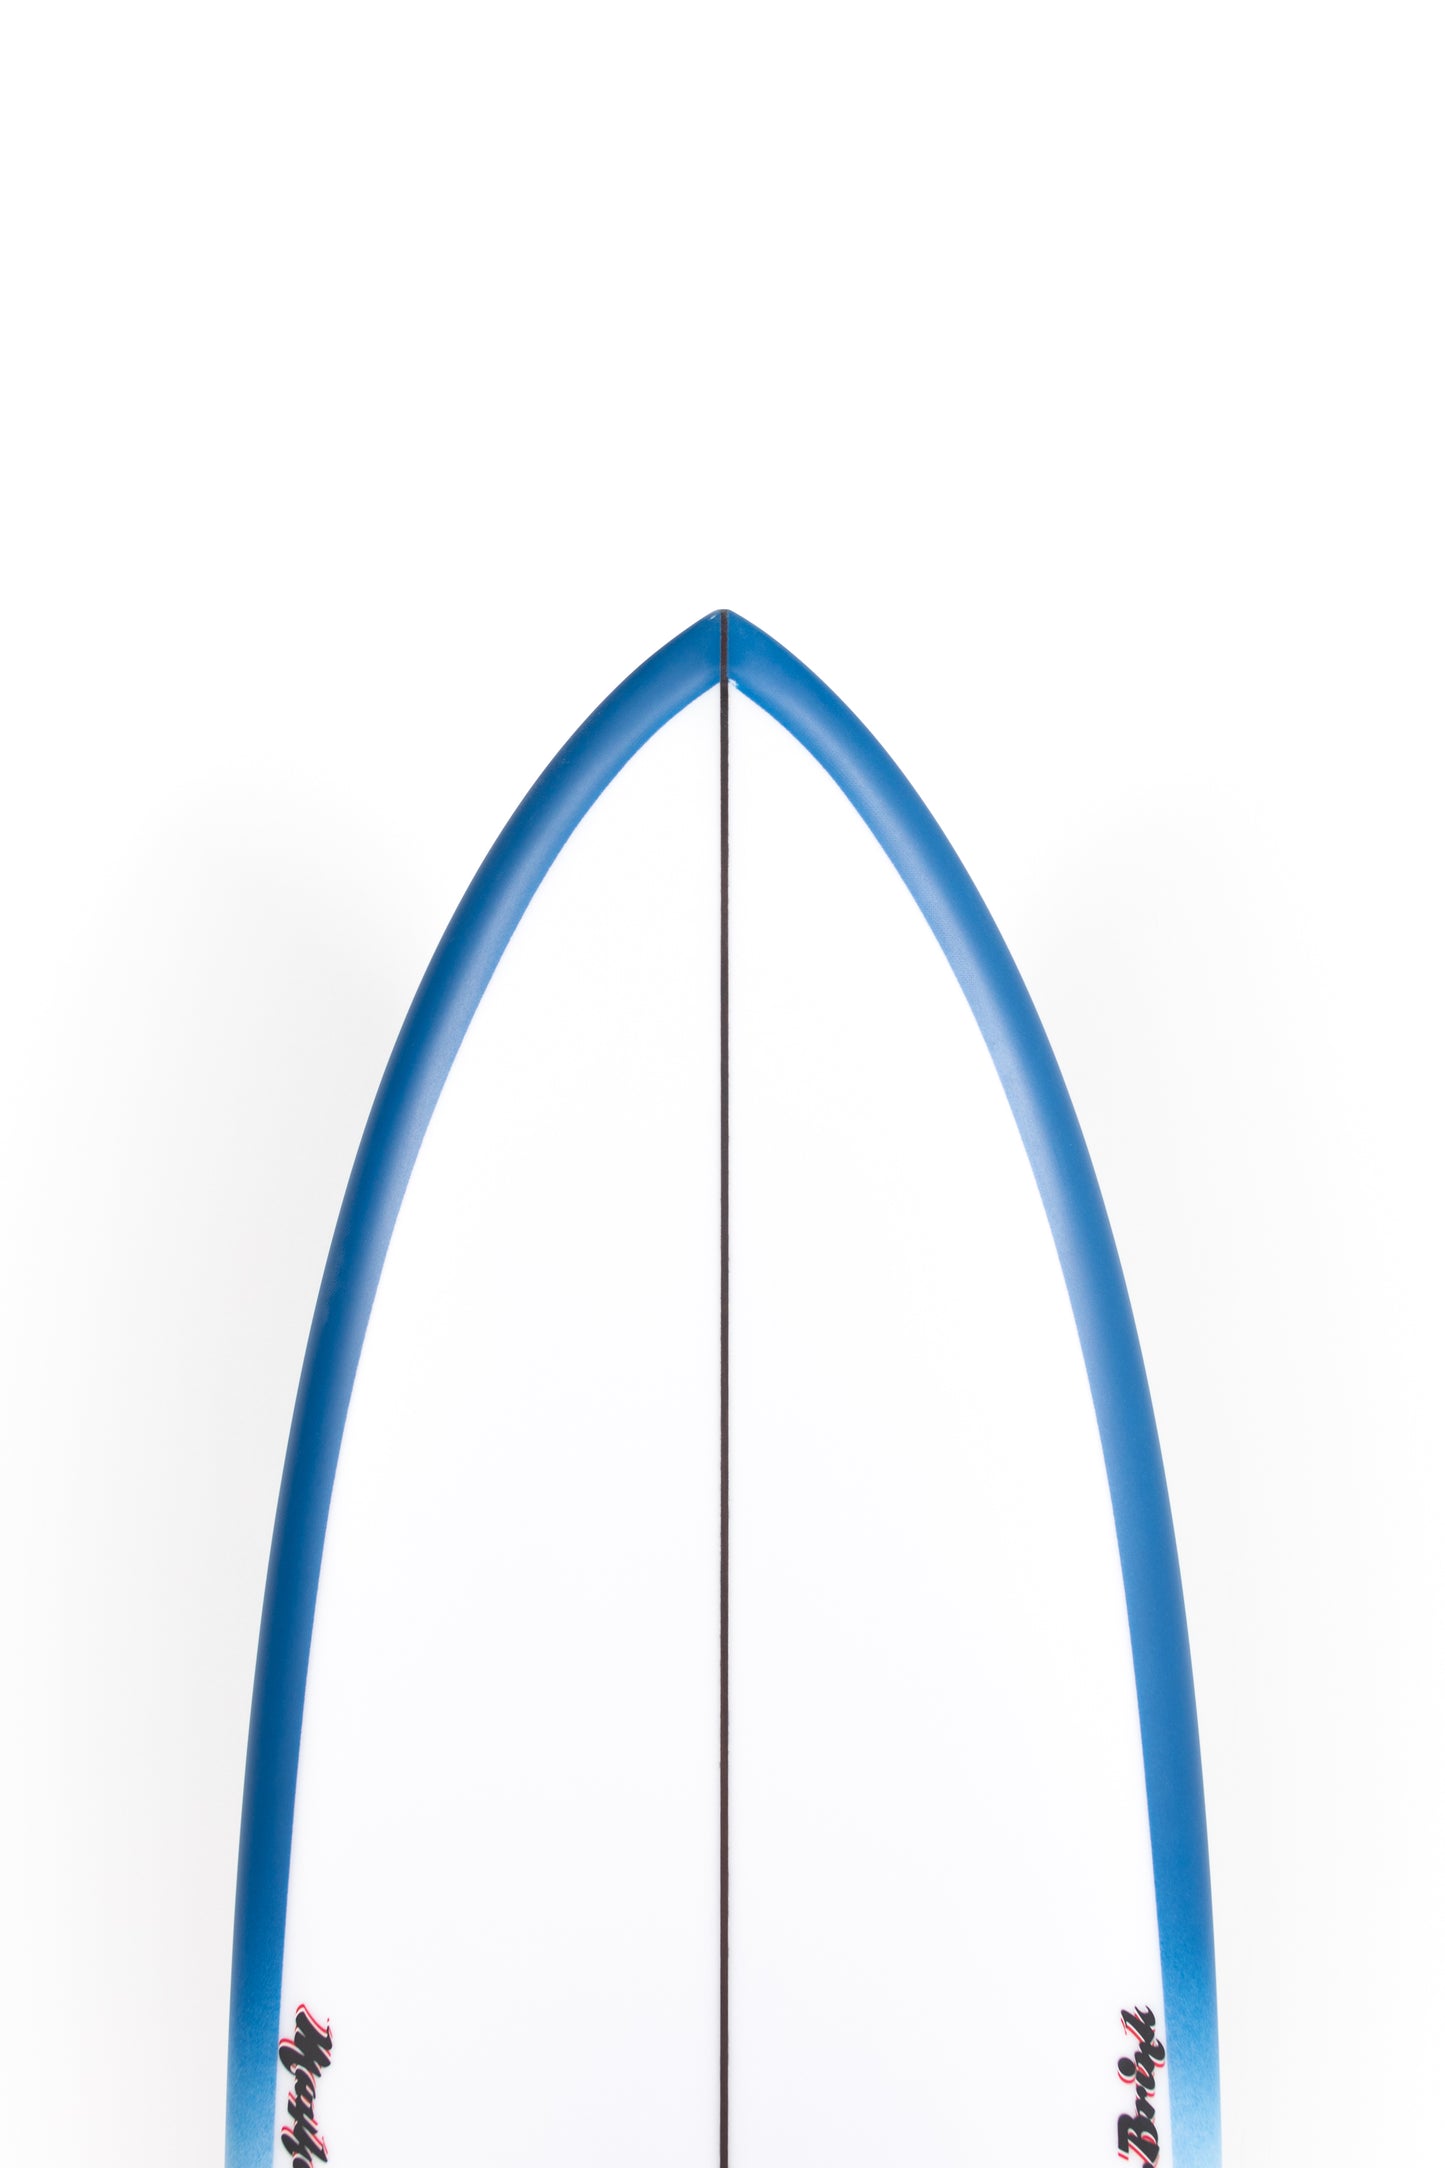 
                  
                    Pukas Surf Shop Lost Surfboard - MICK'S TAPE by Mayhem x Brink - 5’5” x 19,75 x 2,45 - 30,5L - MB00017
                  
                